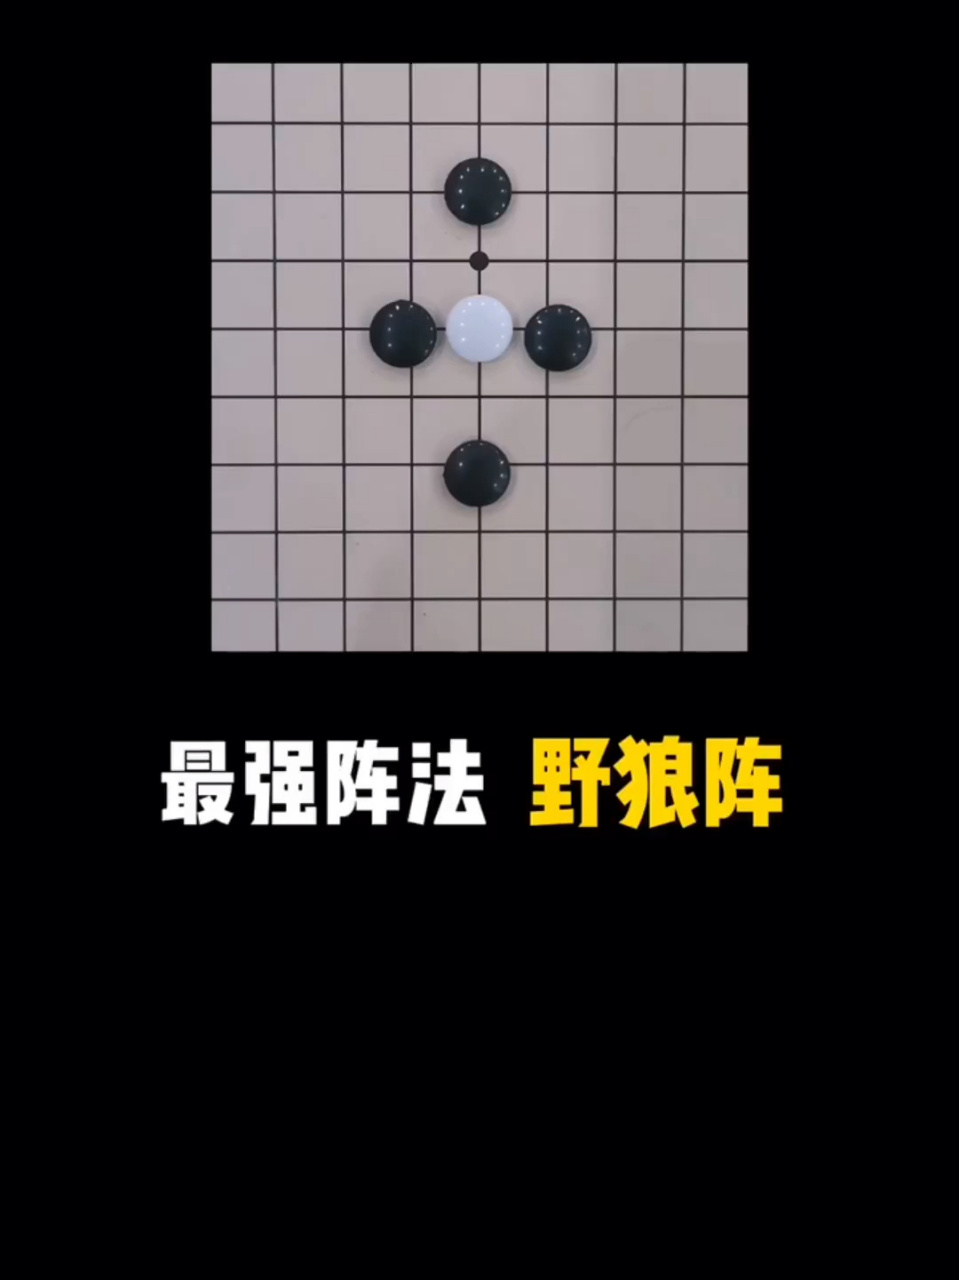 五子棋八卦阵法的图片图片